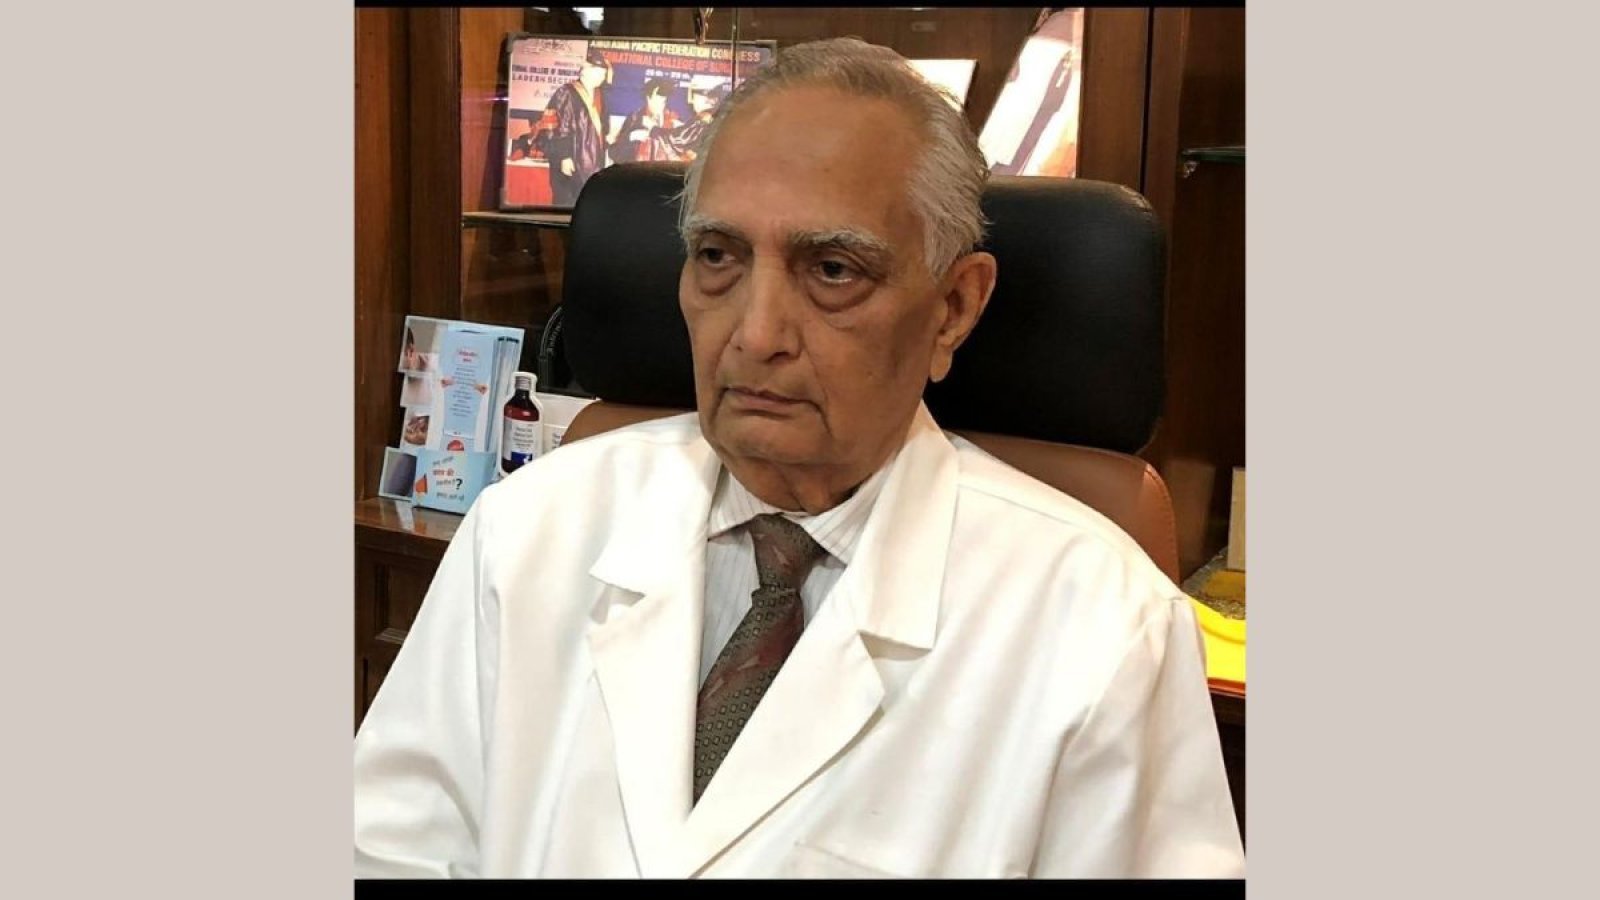 प्रमुख चिकित्सा शोधकर्ता, प्रो. एचएस असोपा का निधन, उनकी योगदान से समृद्धि और सम्मान से भरा चिकित्सा समुदा